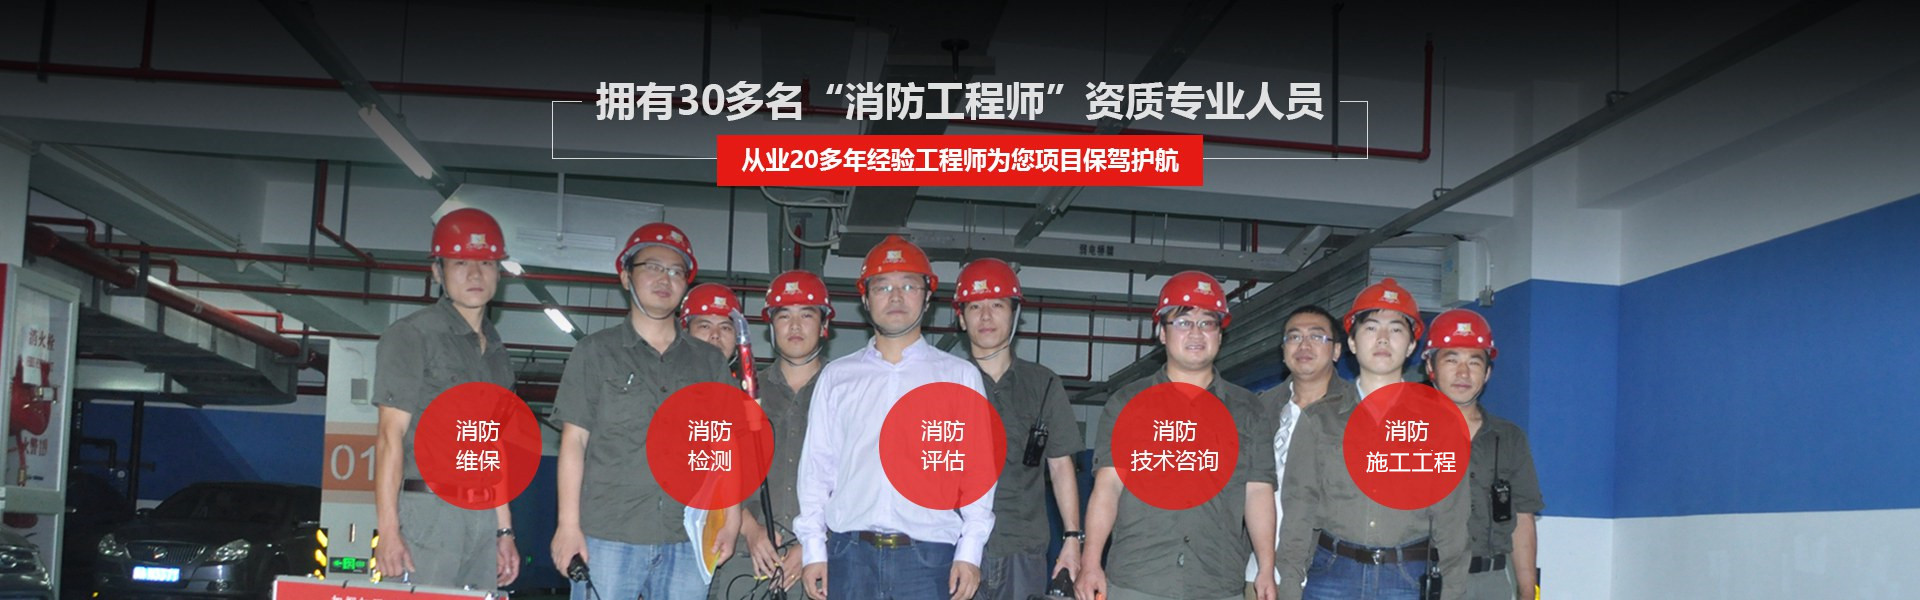 上海消防公司团队